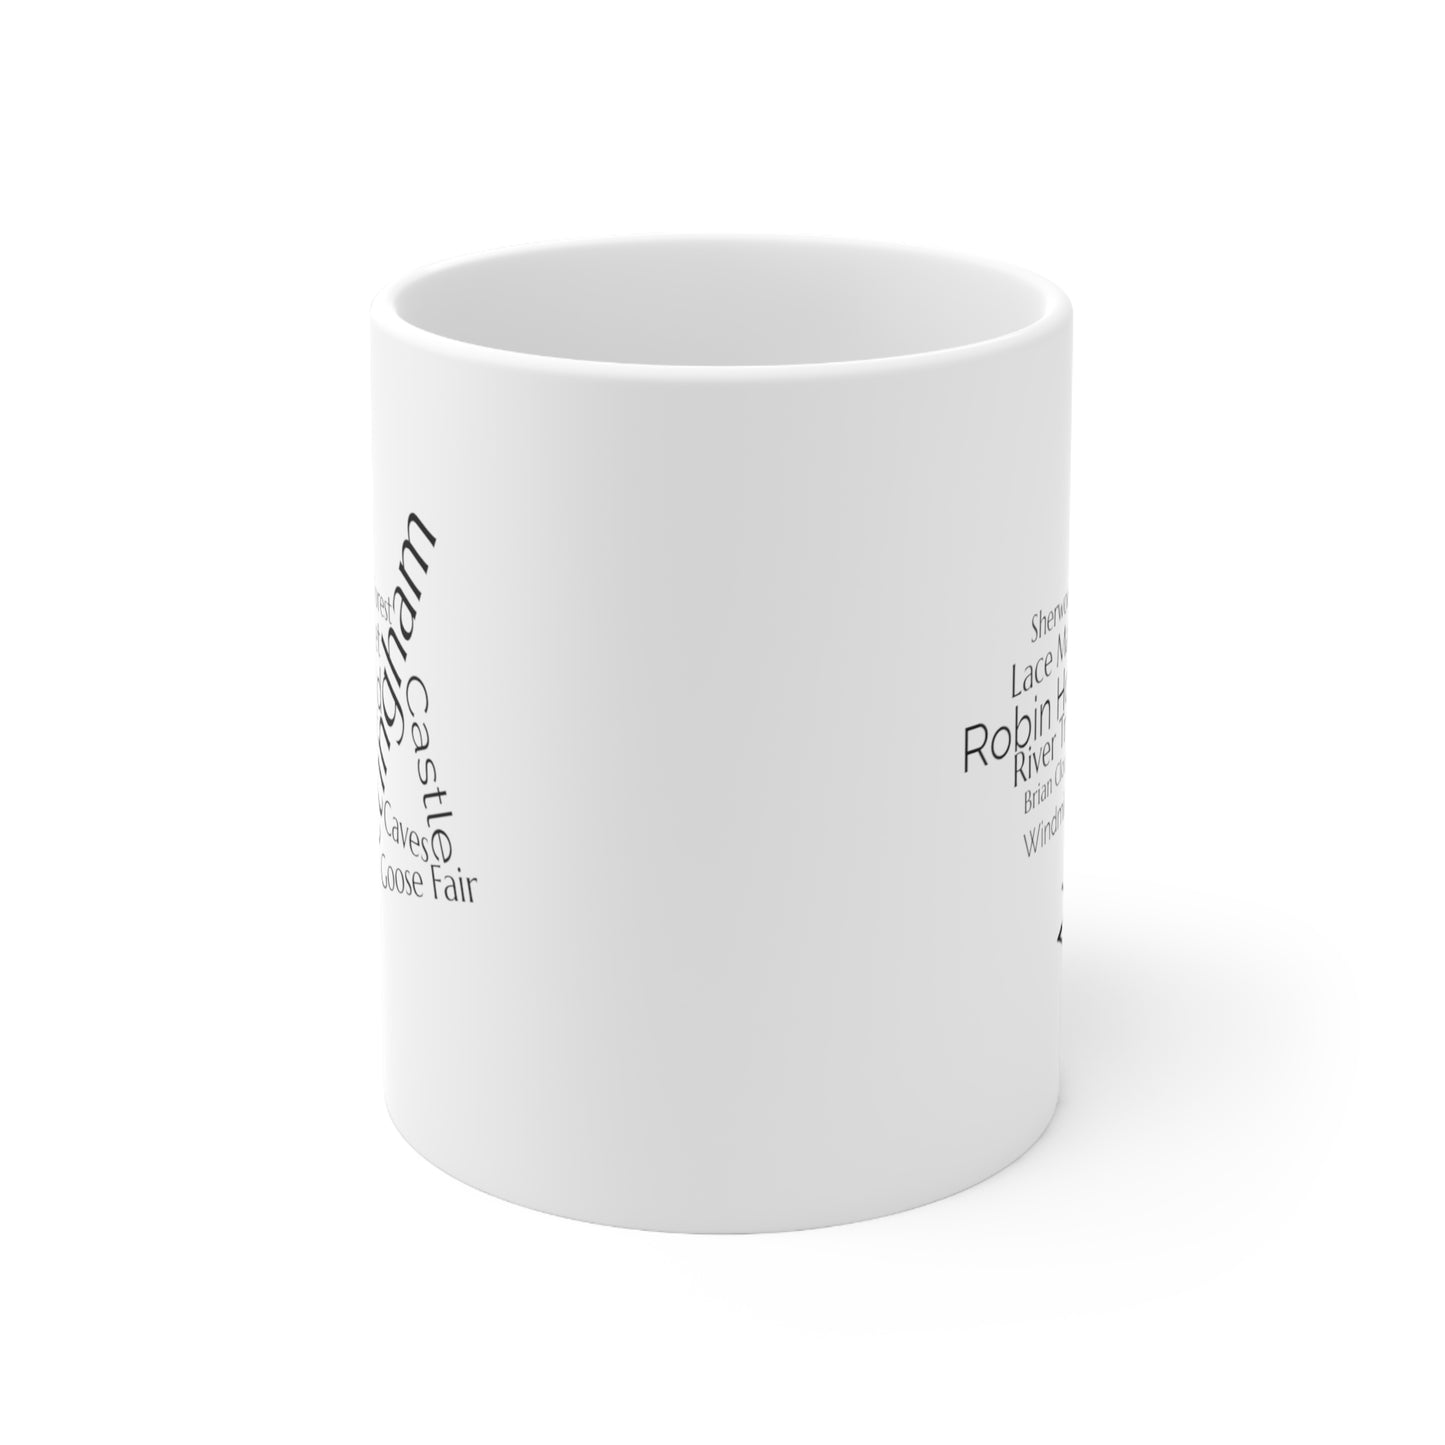 Nottingham word mug, local mug, geography mug, gift, mug, coffee cup, word mug, wordcloud mug, christmas gift, birthday gift